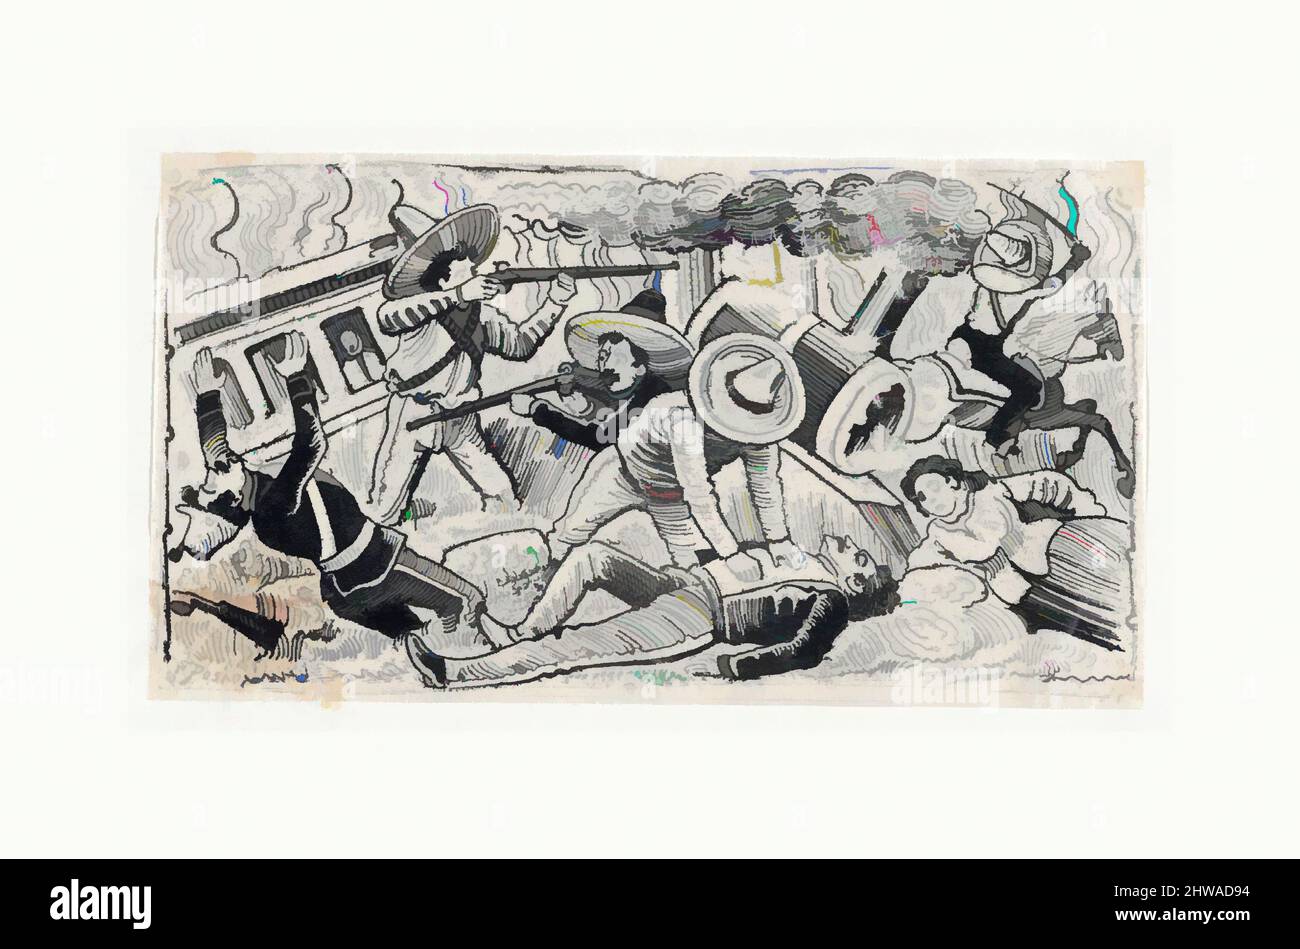 Arte ispirata da disegni e stampe, Stampa, Emiliano Zapata's upporters attaccando un treno, scena dalla Rivoluzione messicana, J.G. Posada, opere classiche modernizzate da Artotop con un tuffo di modernità. Forme, colore e valore, impatto visivo accattivante sulle emozioni artistiche attraverso la libertà delle opere d'arte in modo contemporaneo. Un messaggio senza tempo che persegue una nuova direzione selvaggiamente creativa. Artisti che si rivolgono al supporto digitale e creano l'NFT Artotop Foto Stock